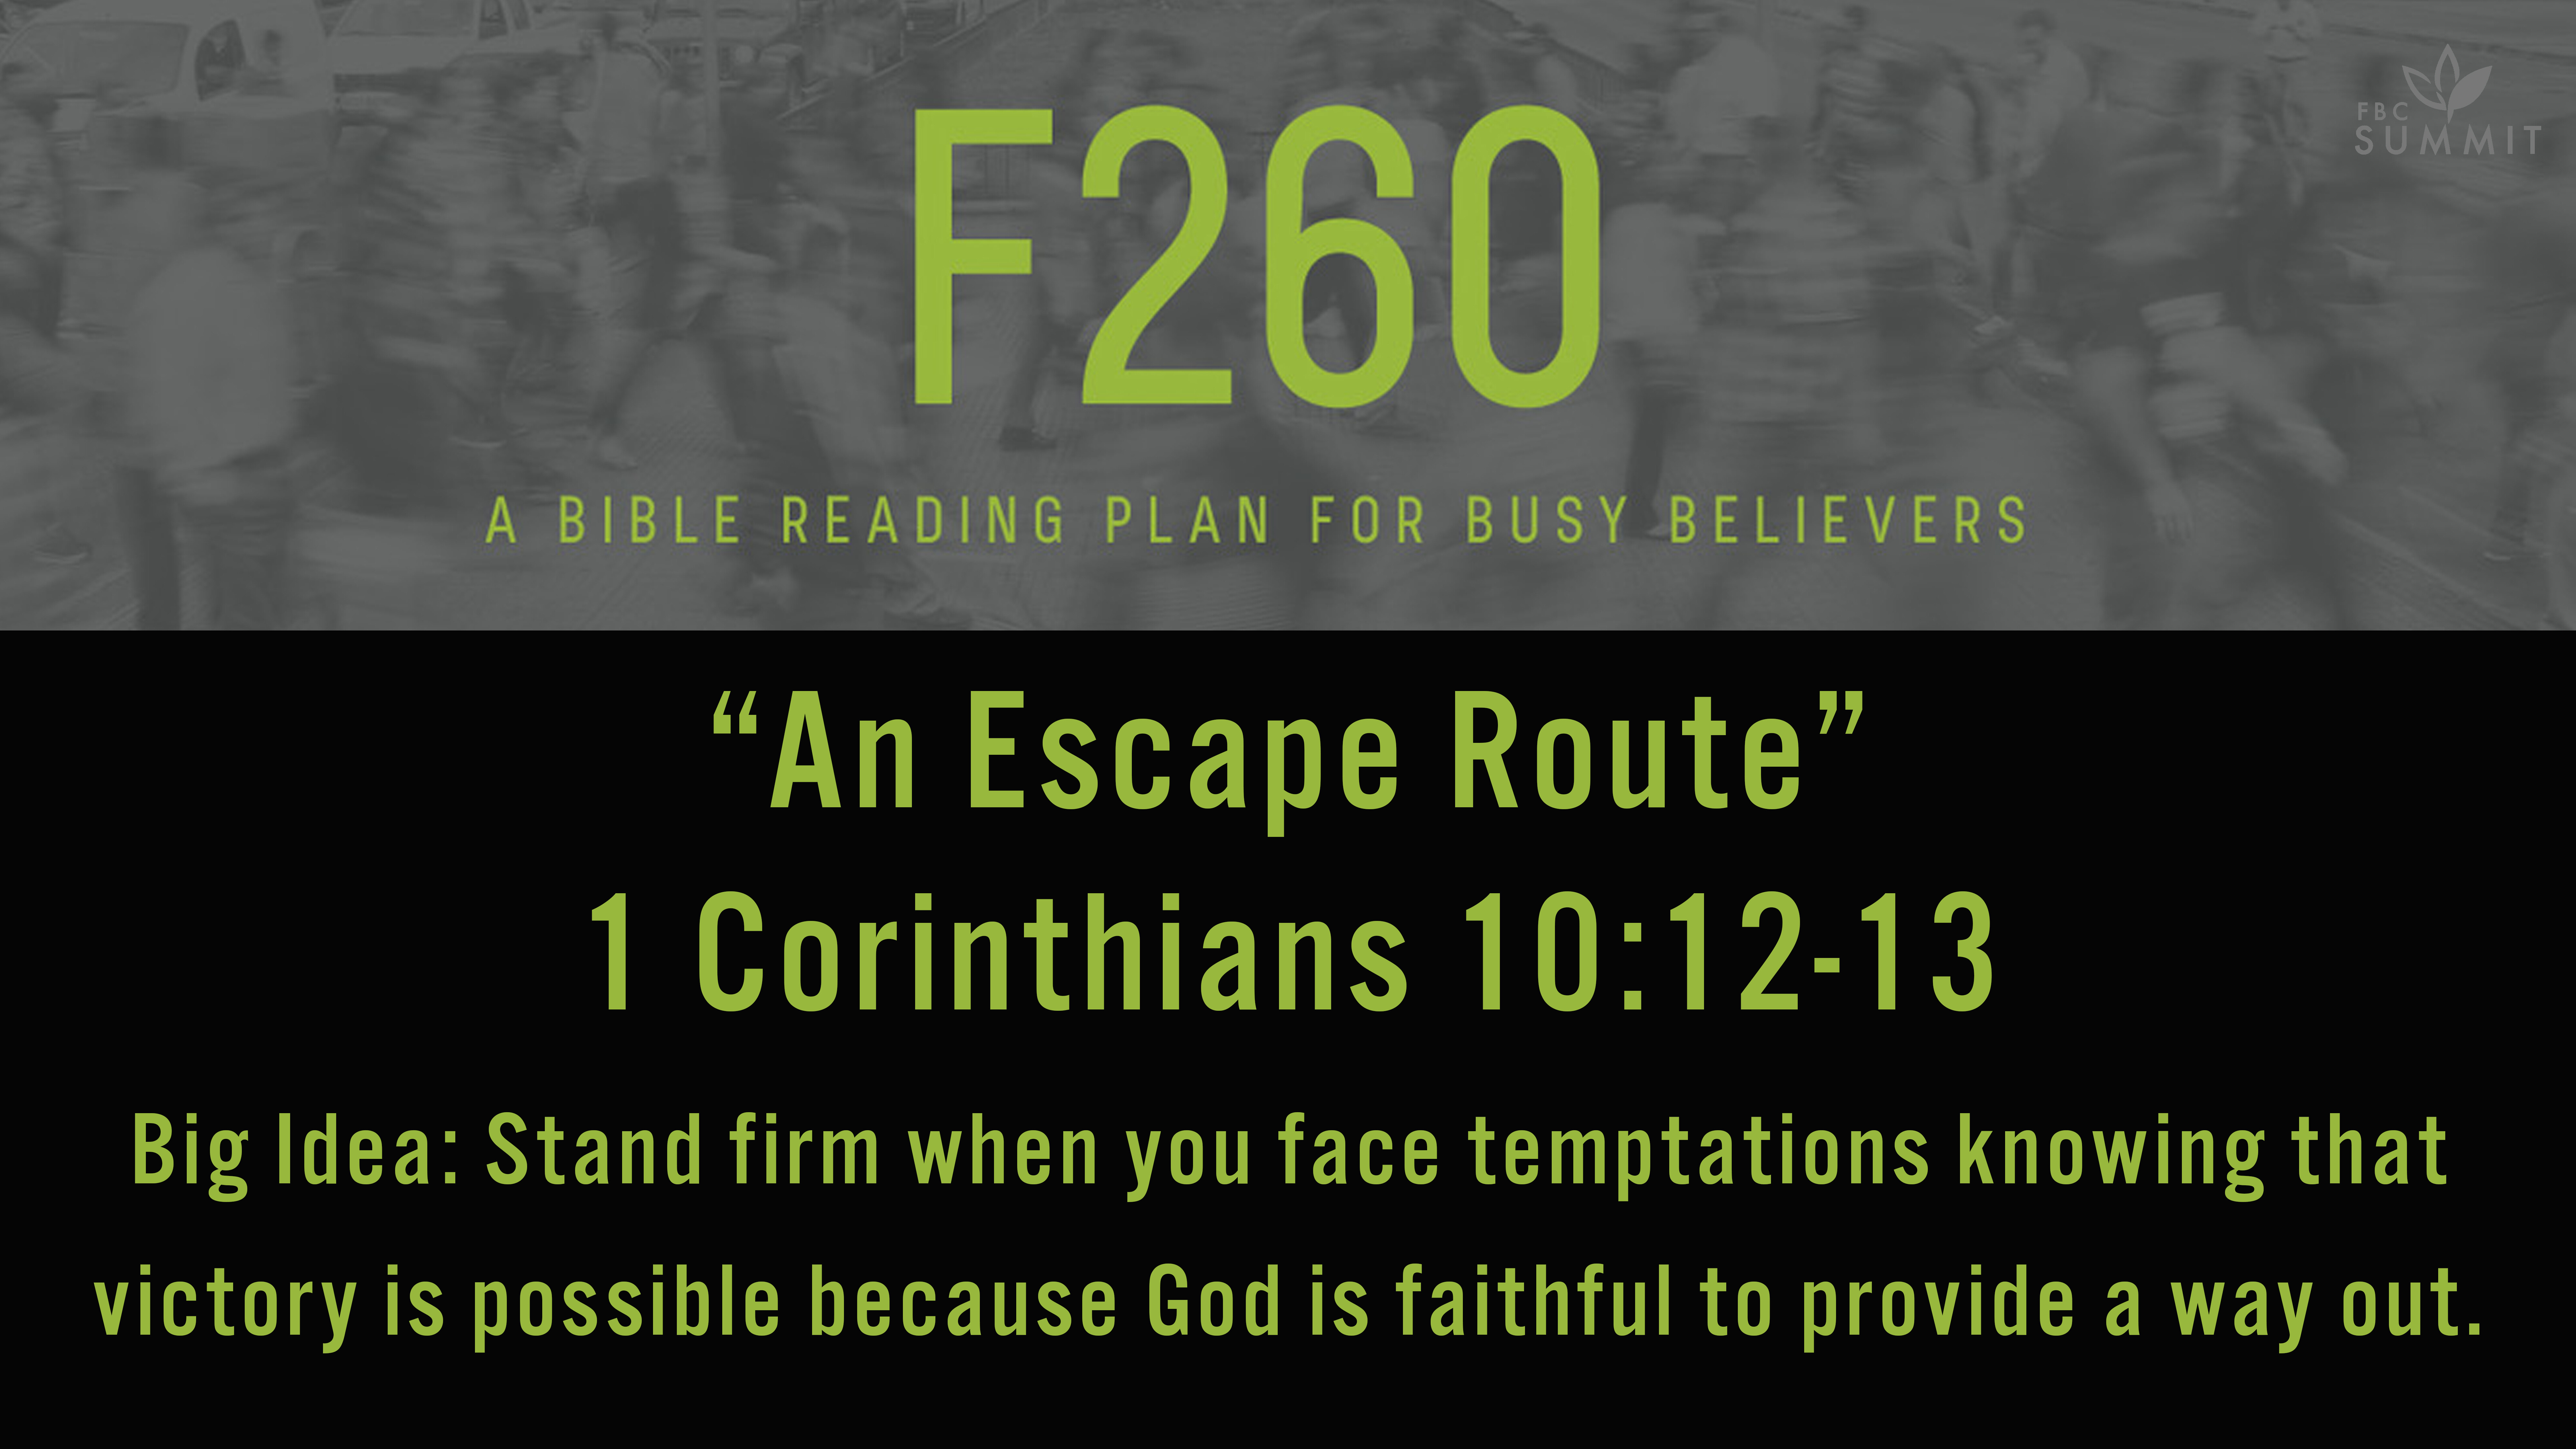 F260: "An Escape Route" 1 Corinthians 10:12-13